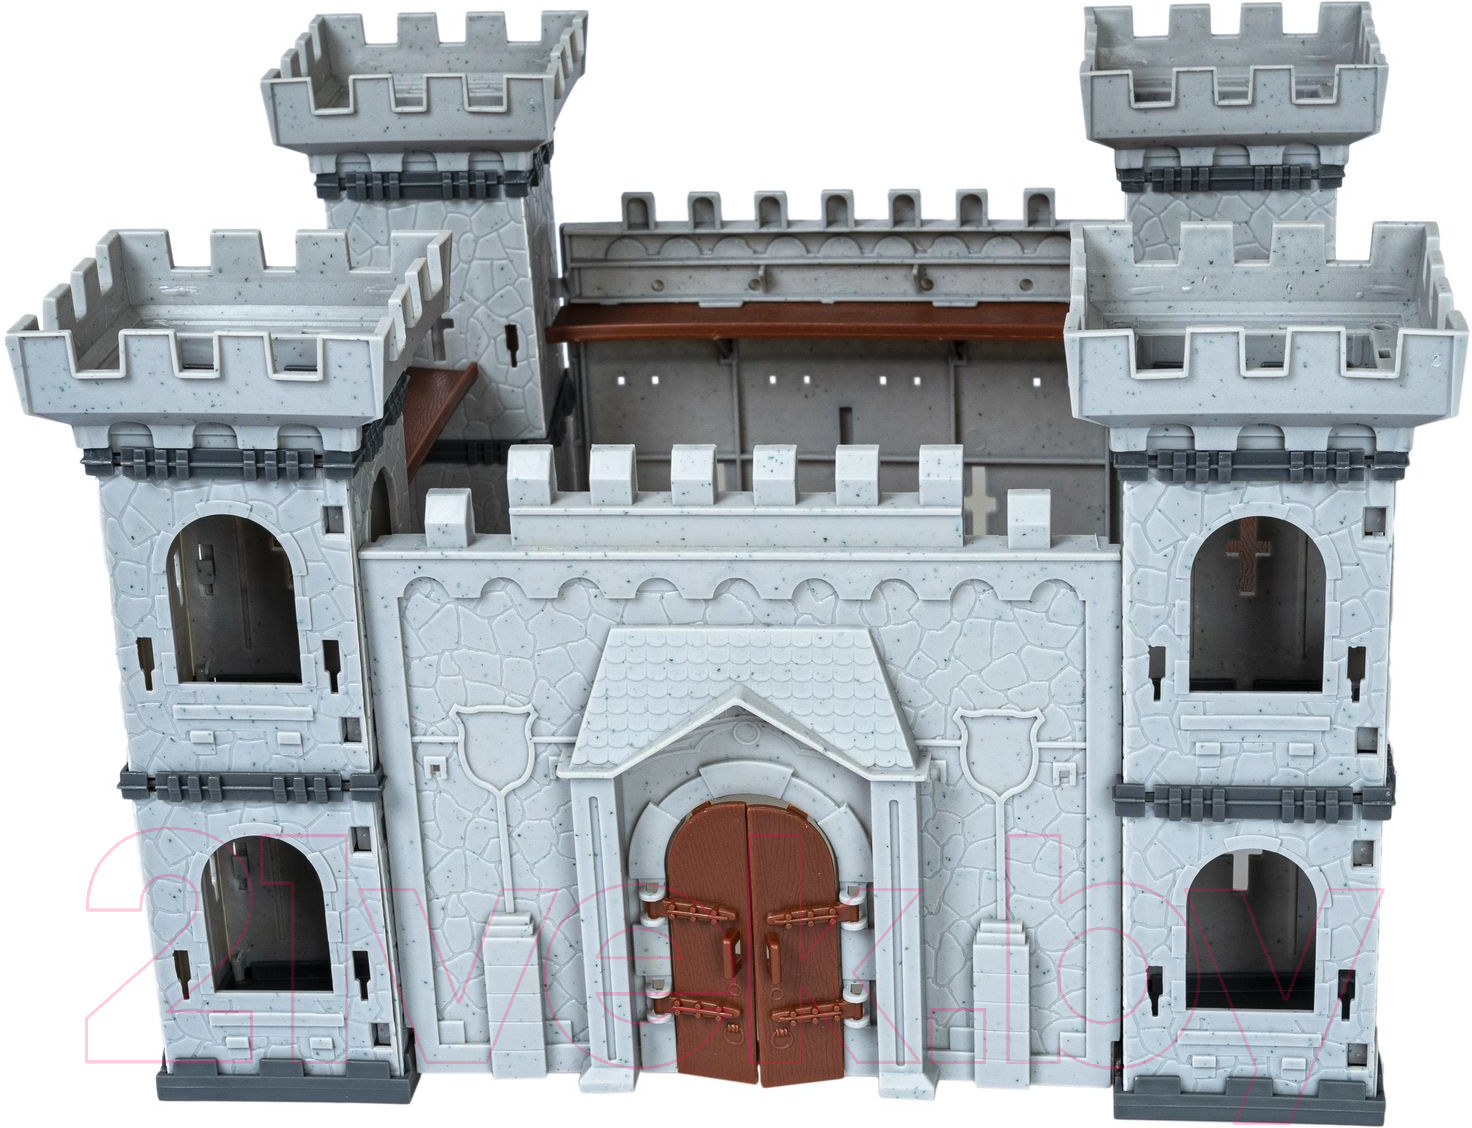 Игровой набор Bondibon Волшебный замок Крепость / ВВ5159